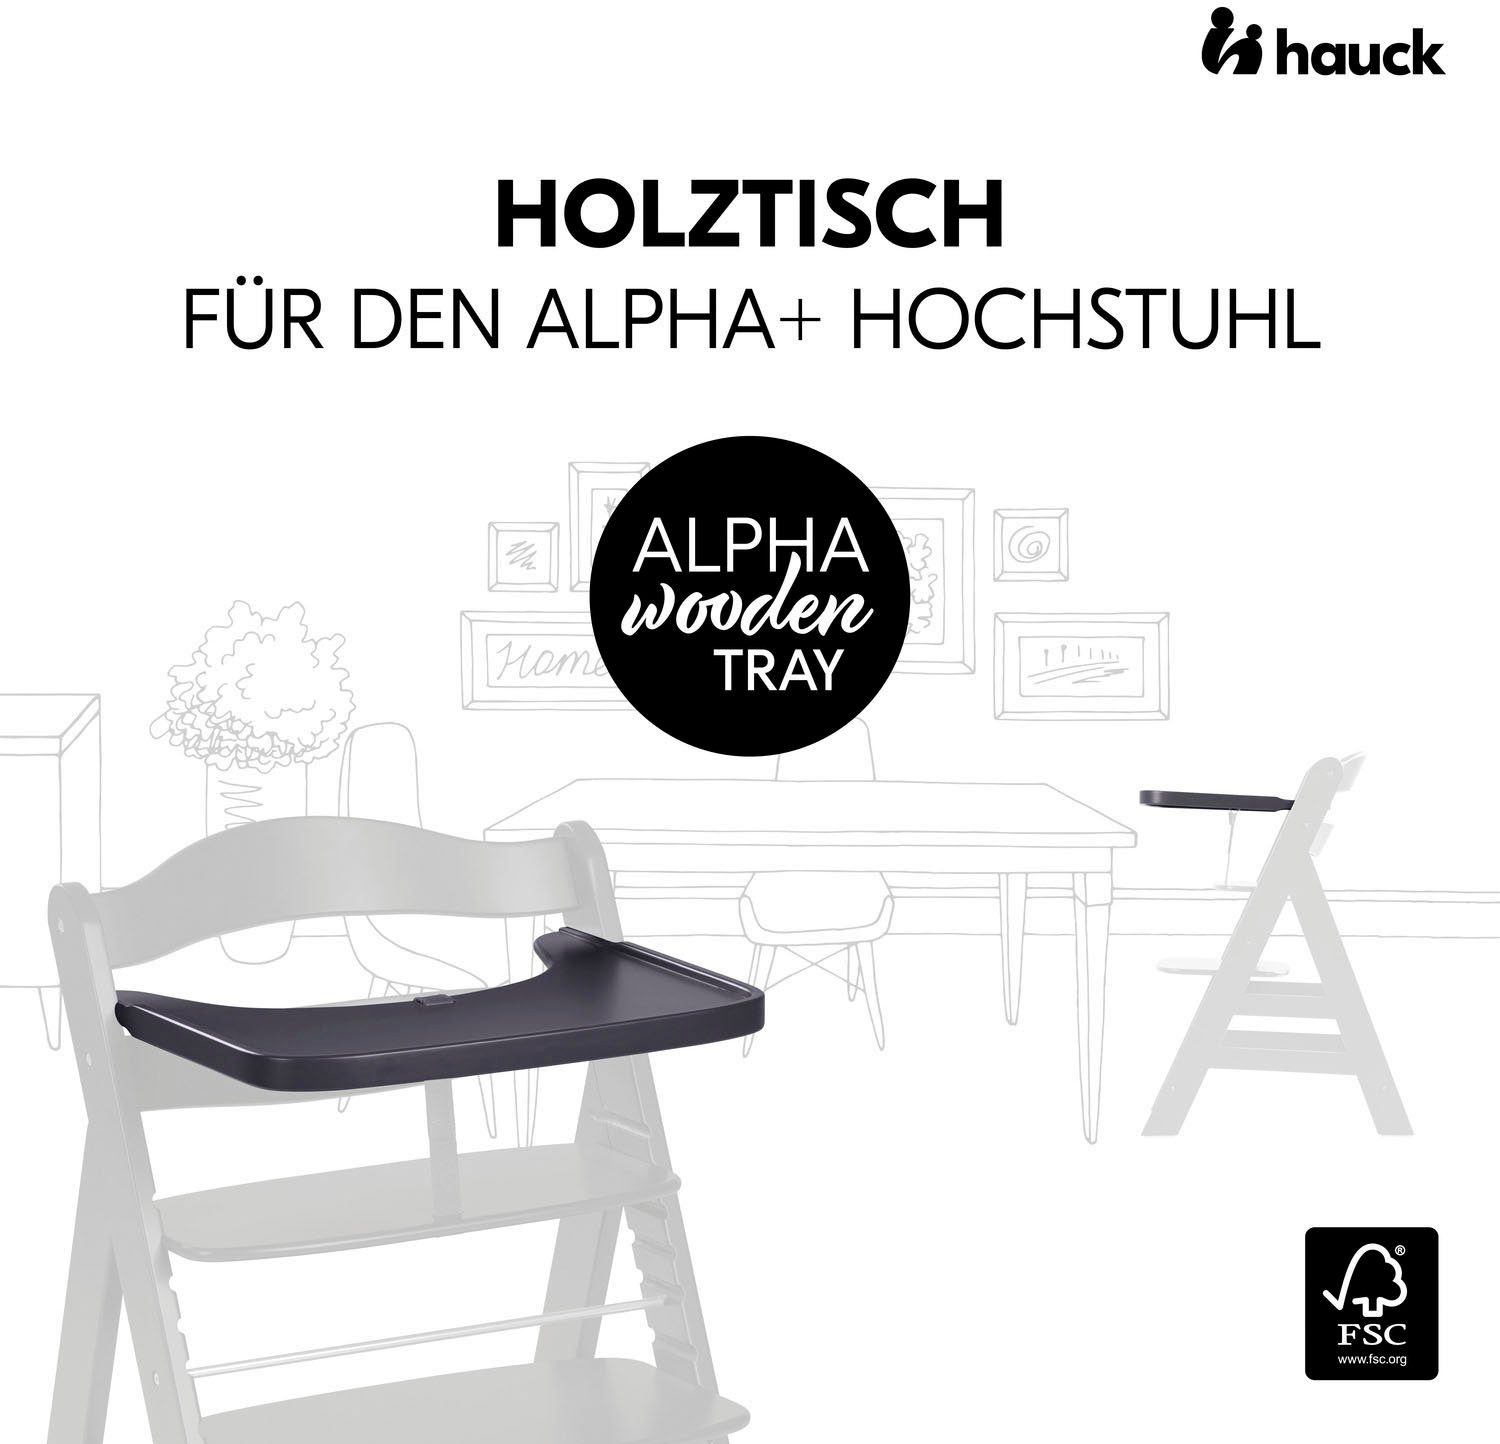 Hauck Hochstuhltablett - Wald weltweit Dark Holz, FSC® Essbrett, schützt Tray Grey, Wooden Alpha 